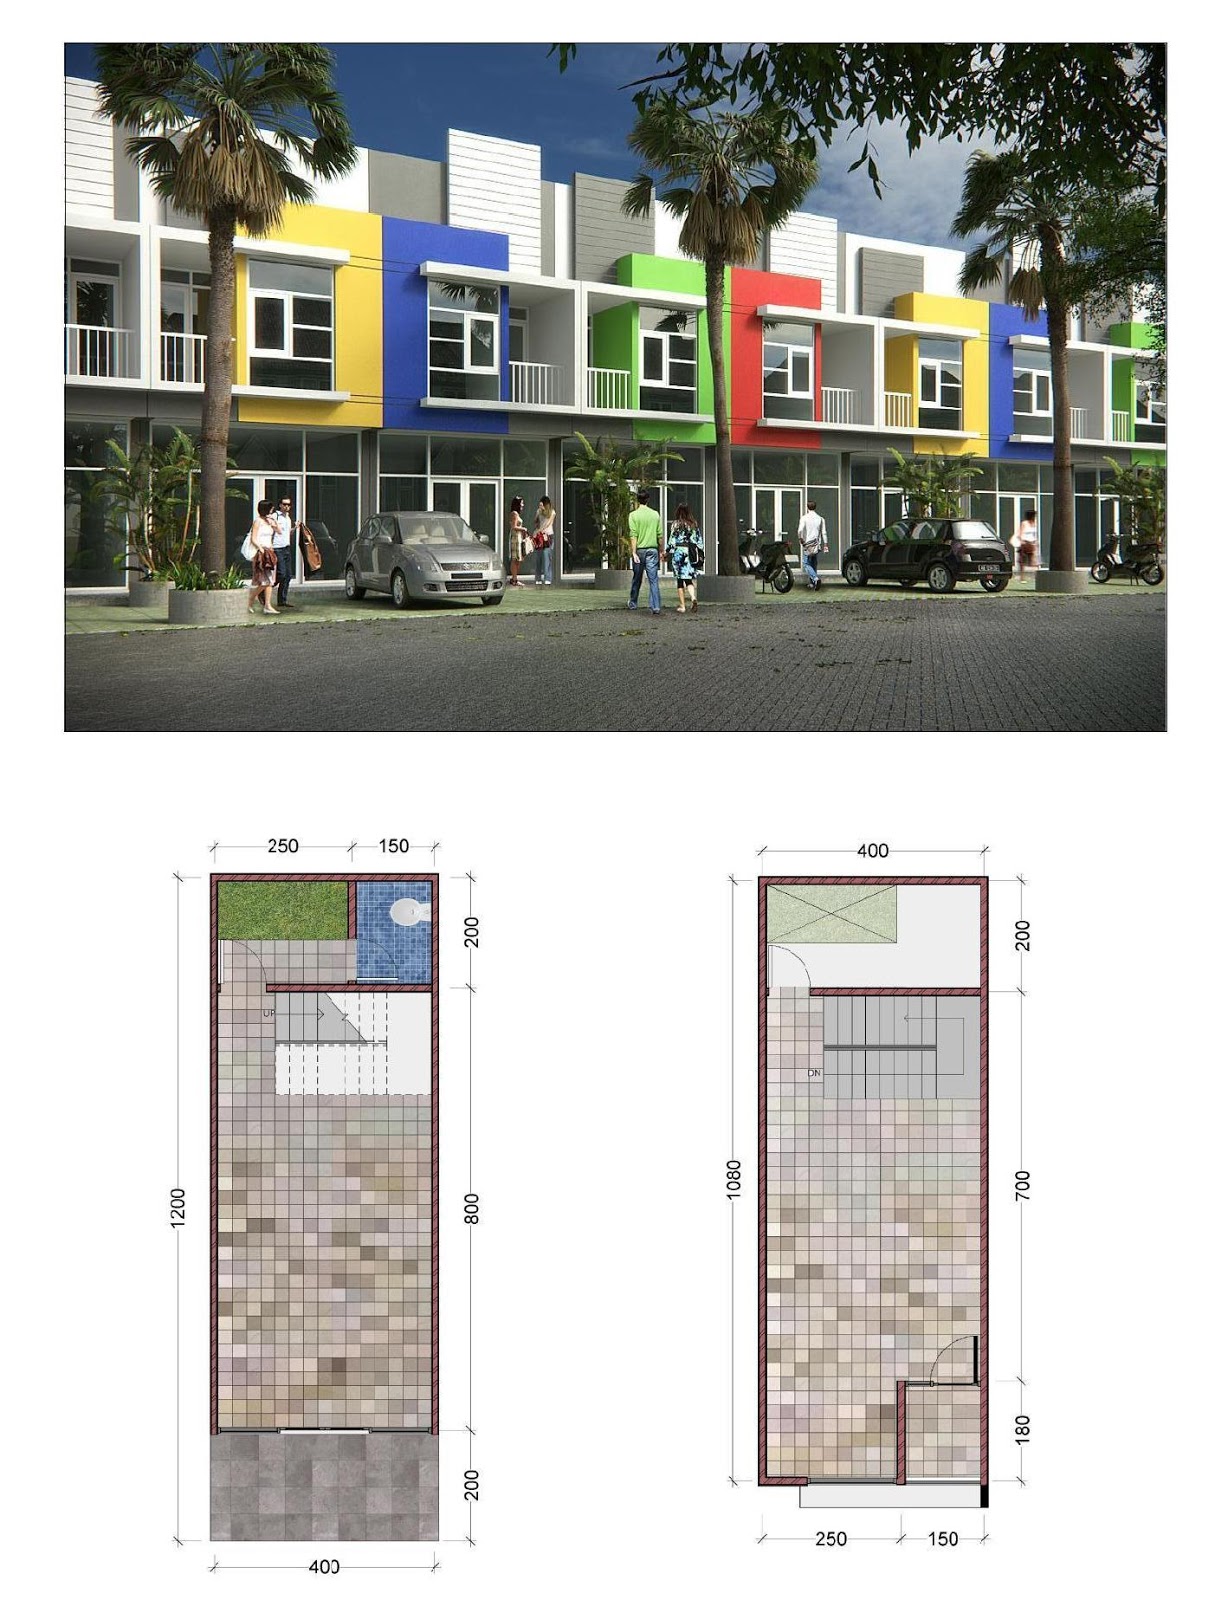 Desa Rumah Toko Ruko Jasa Desain Gambar Rumah Minimalis Online Murah Harga Terjangkau